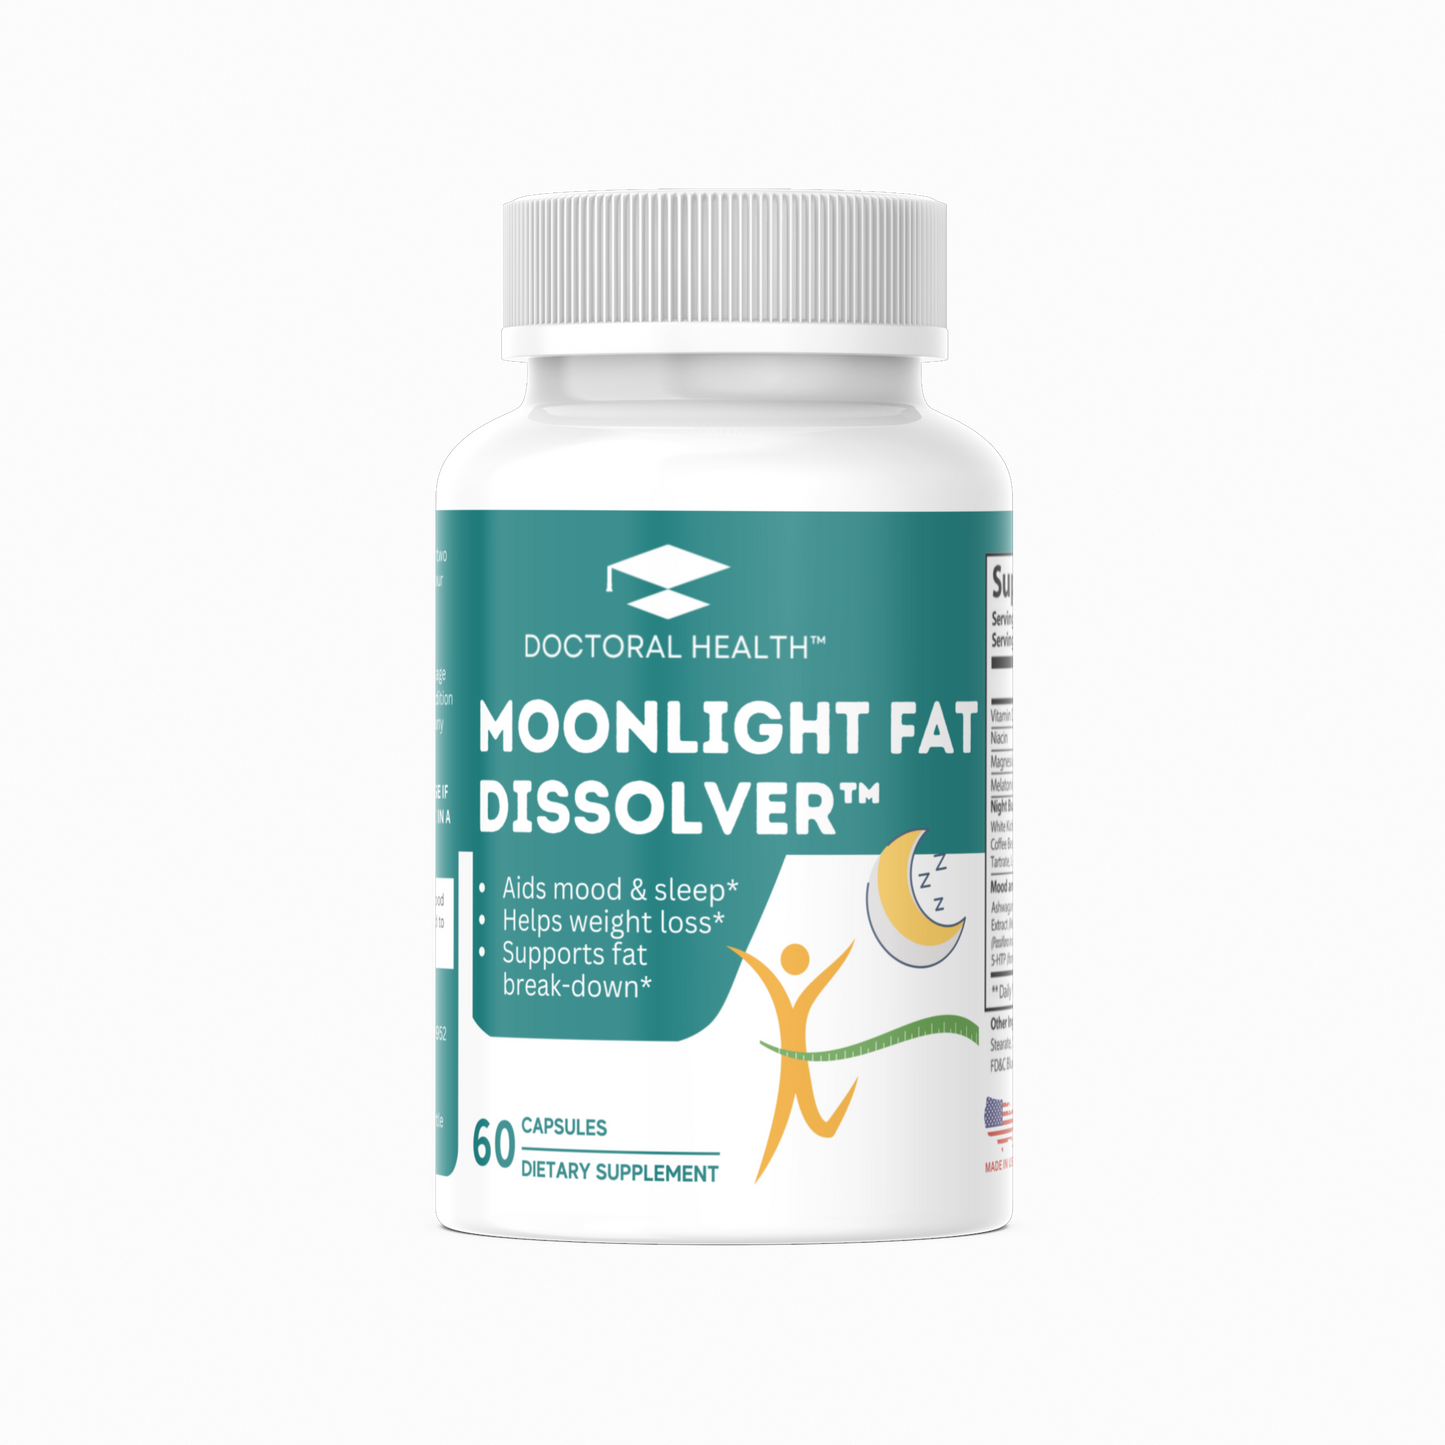 Moonlight Fat Dissolver™